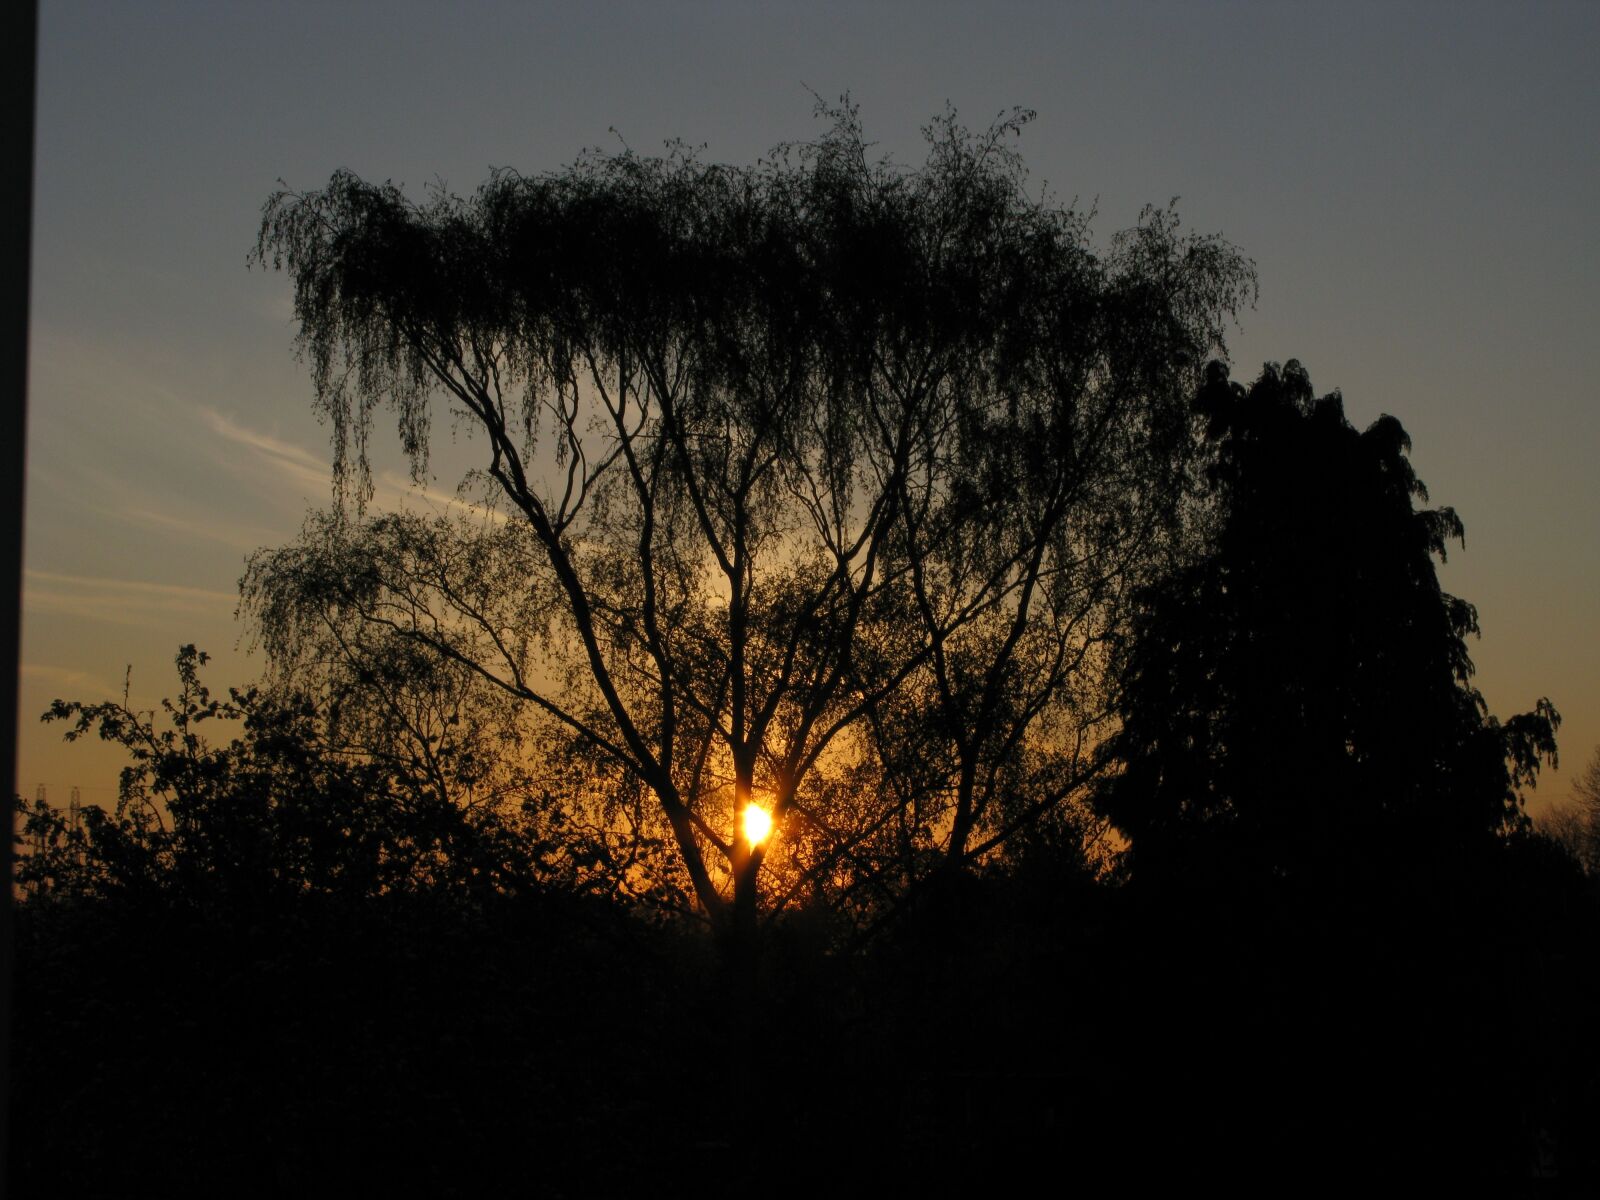 Canon POWERSHOT G9 sample photo. Sunrise, sunrise in england photography